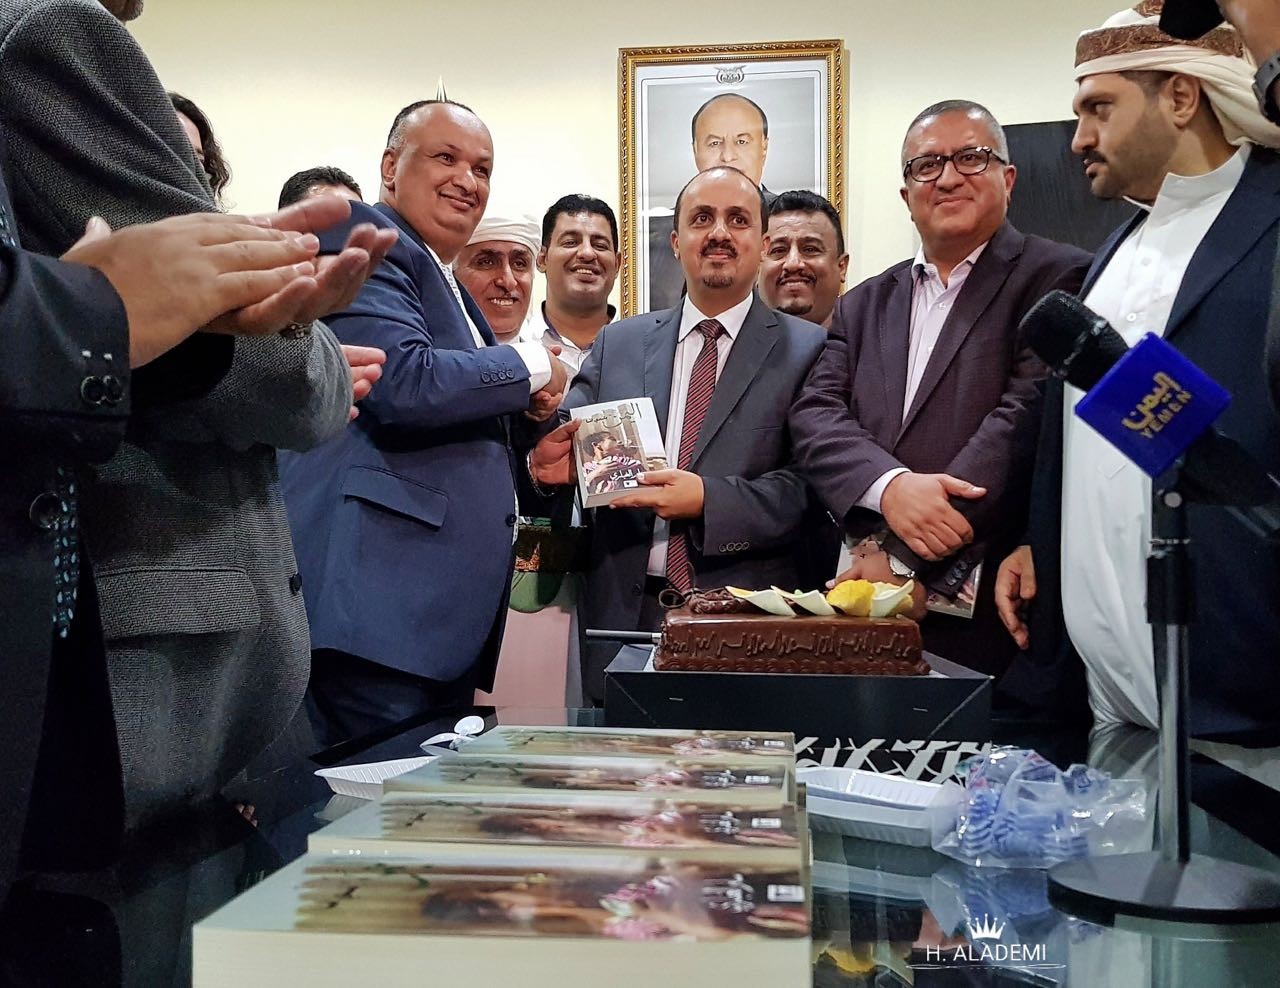 وزارة الاعلام تحتفي بالكاتب سام الغباري وتدشن كتابه الجديد "اليمن بلدي أنا"